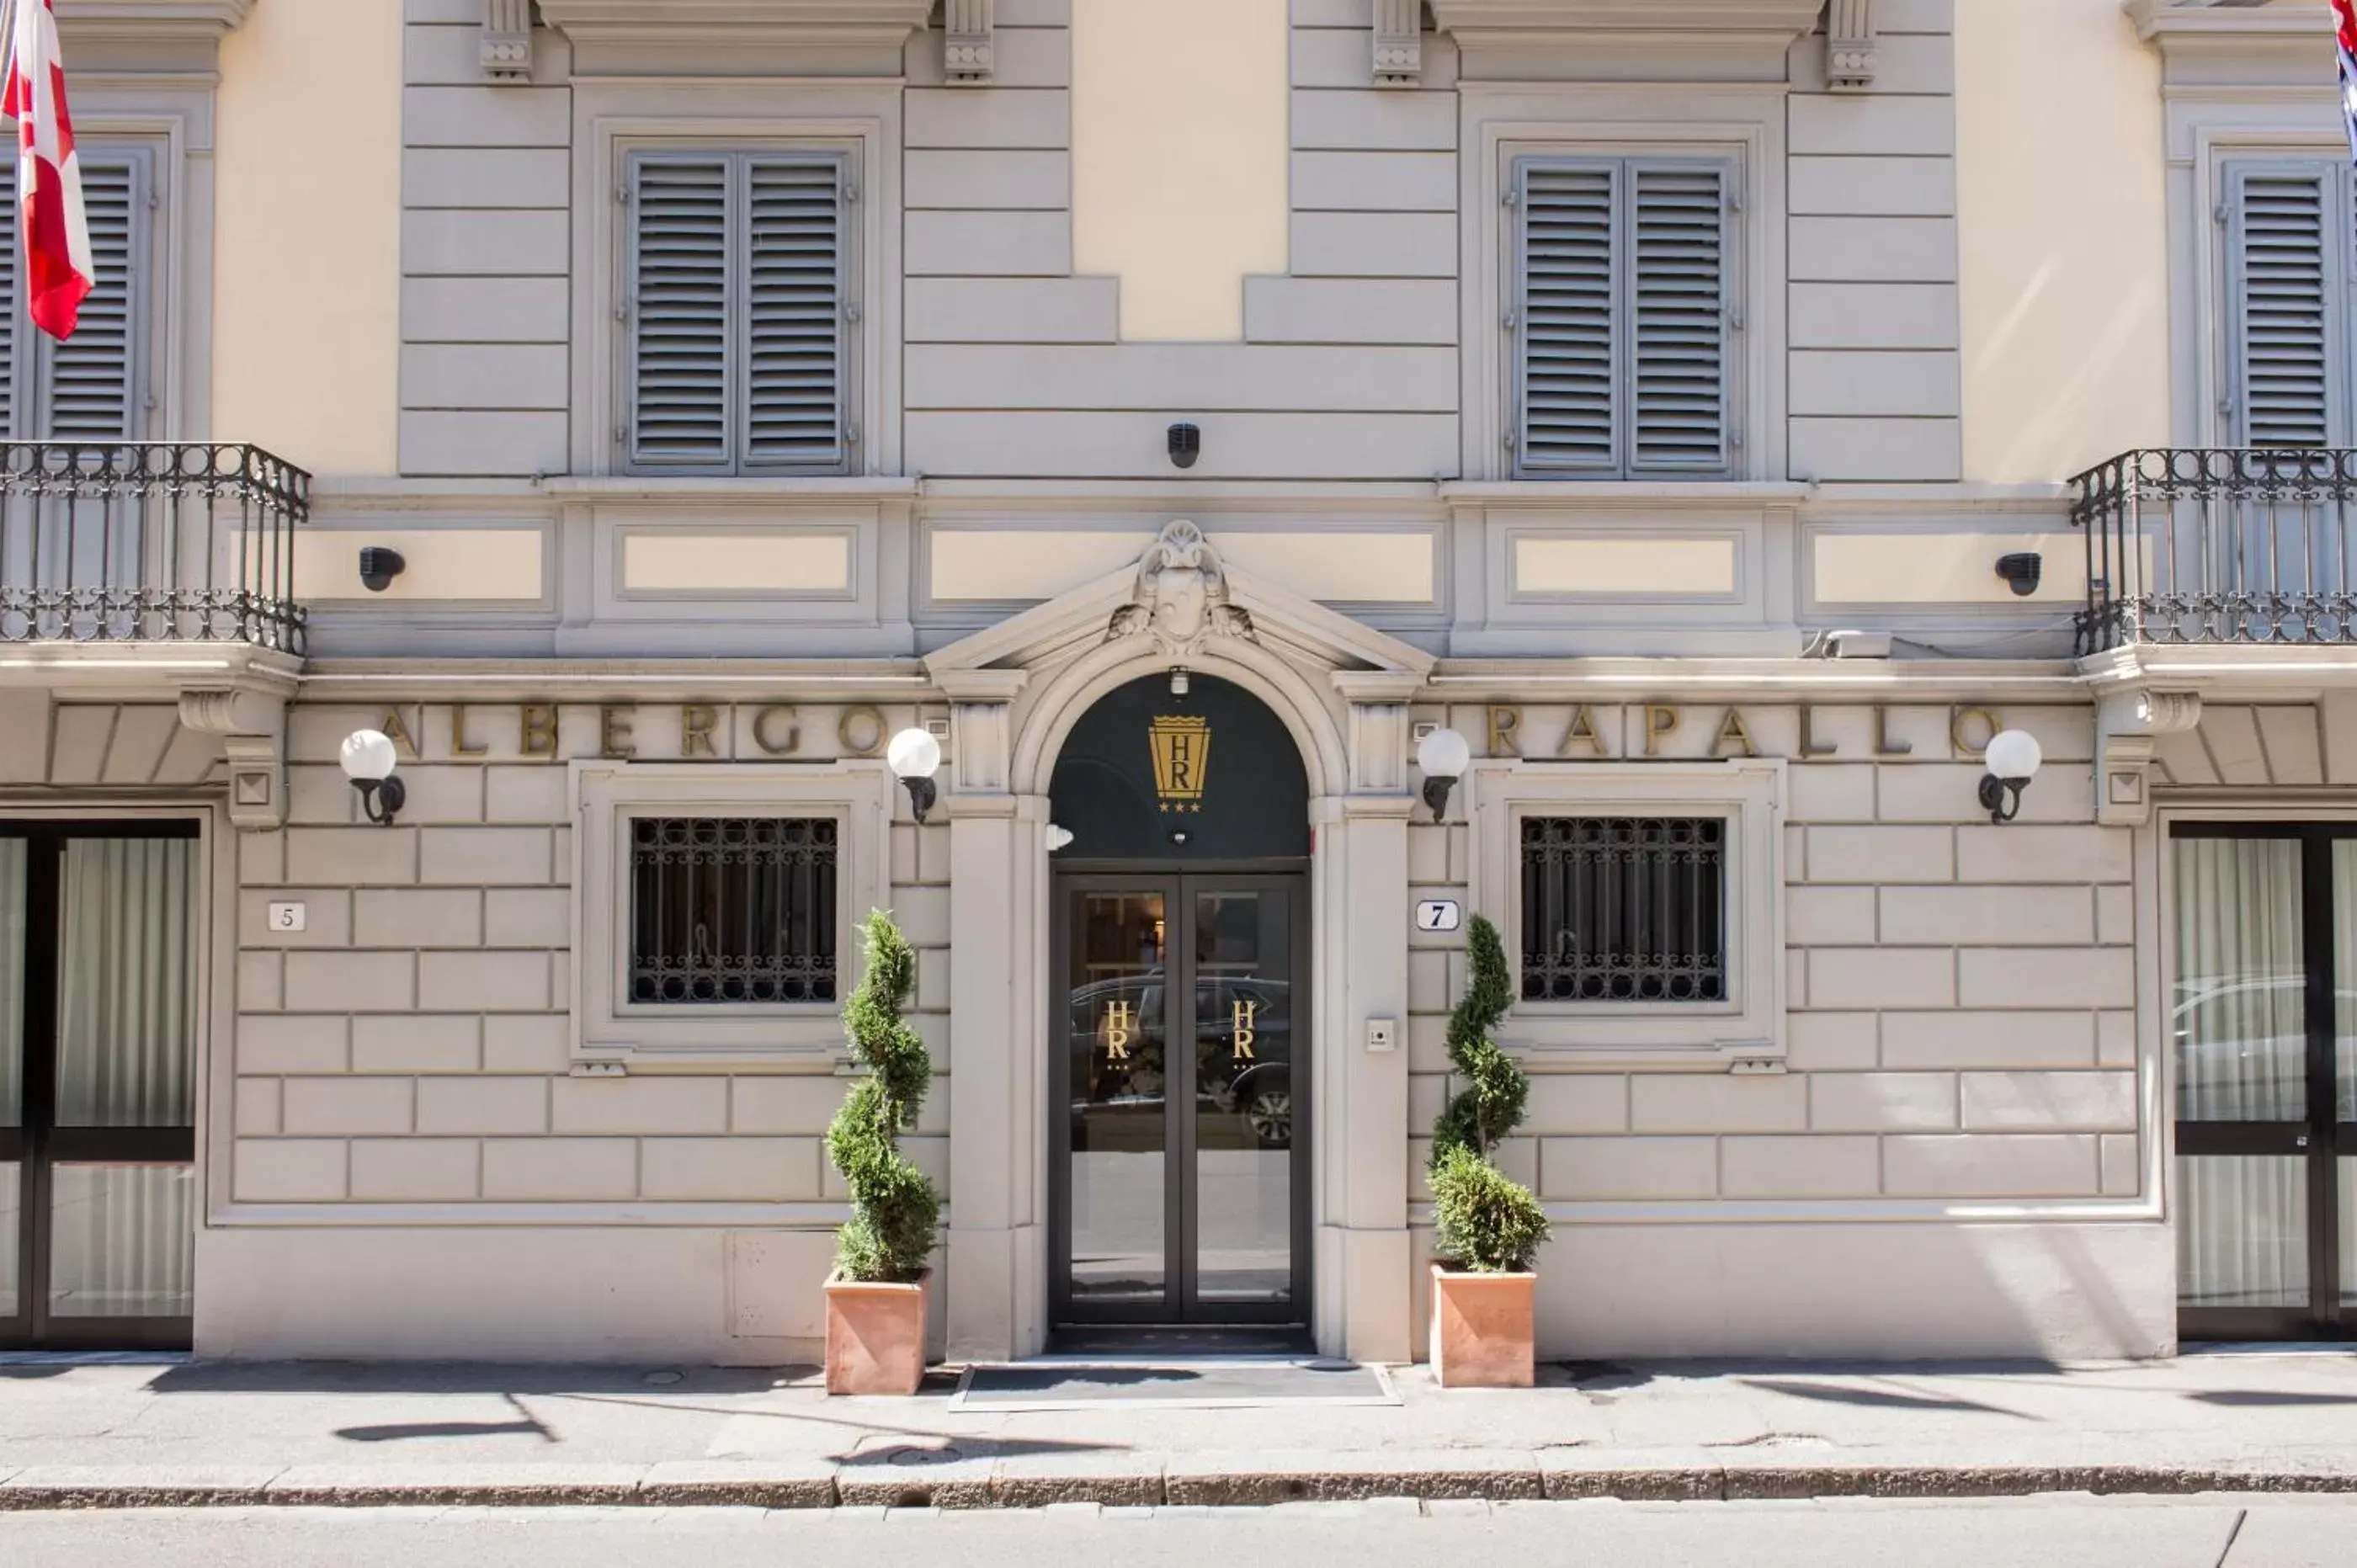 Facade/entrance in Hotel Rapallo